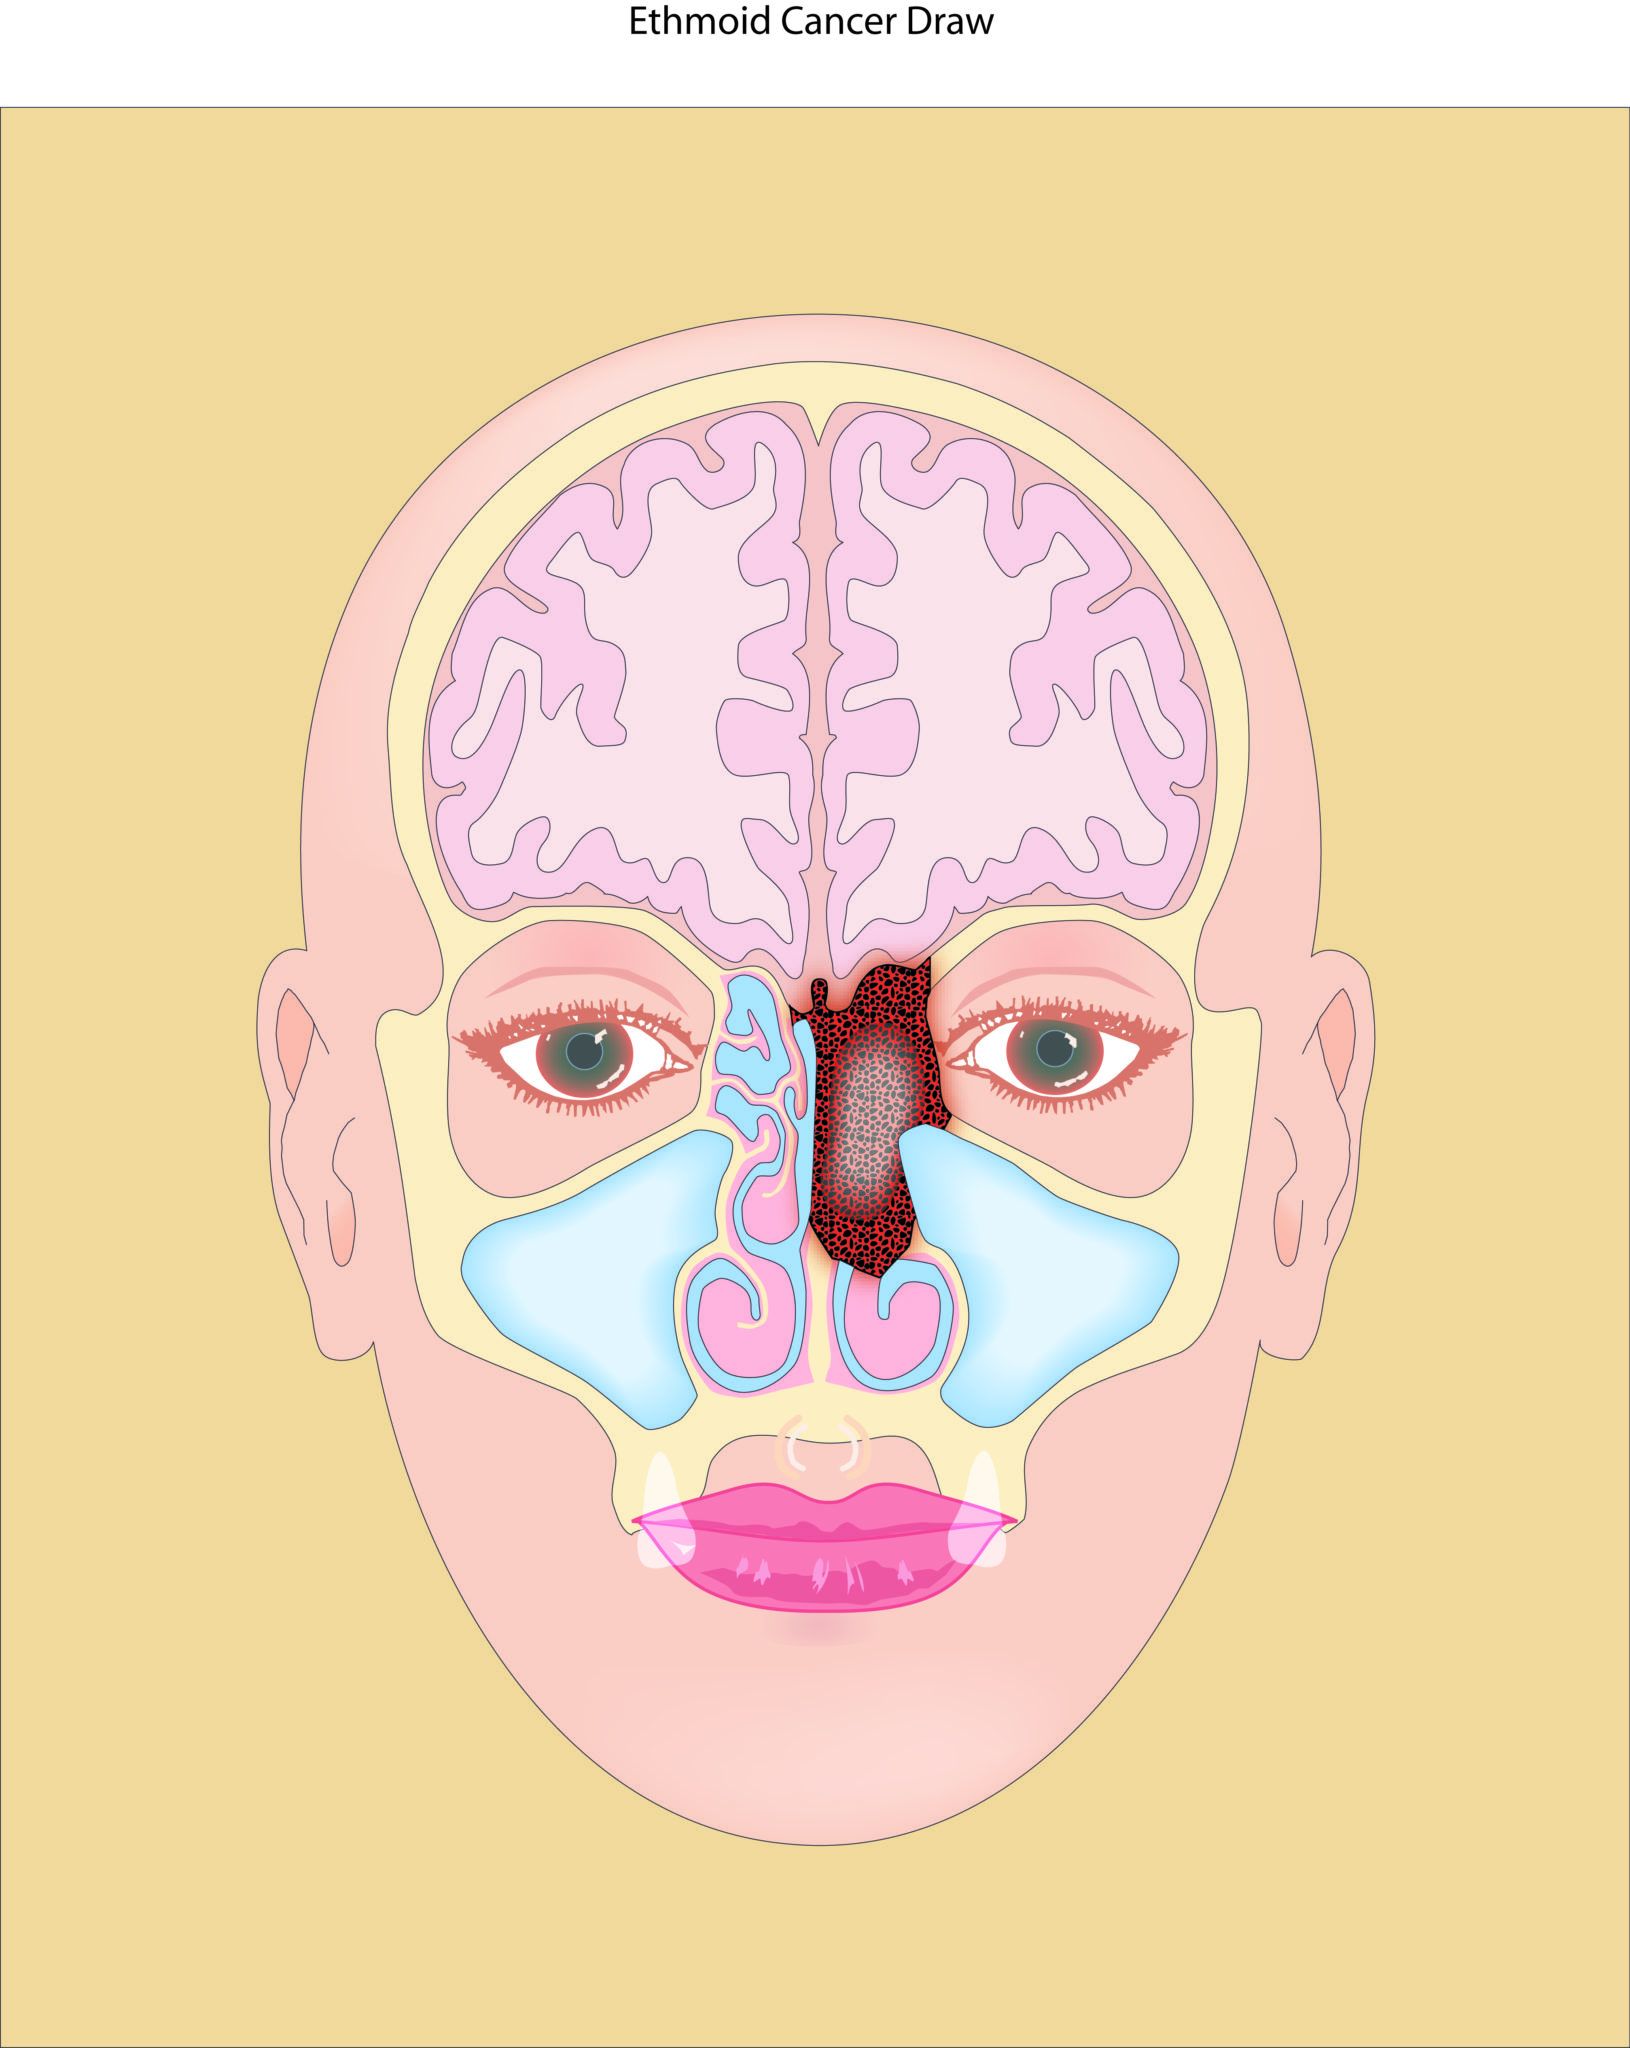 sinus cancer